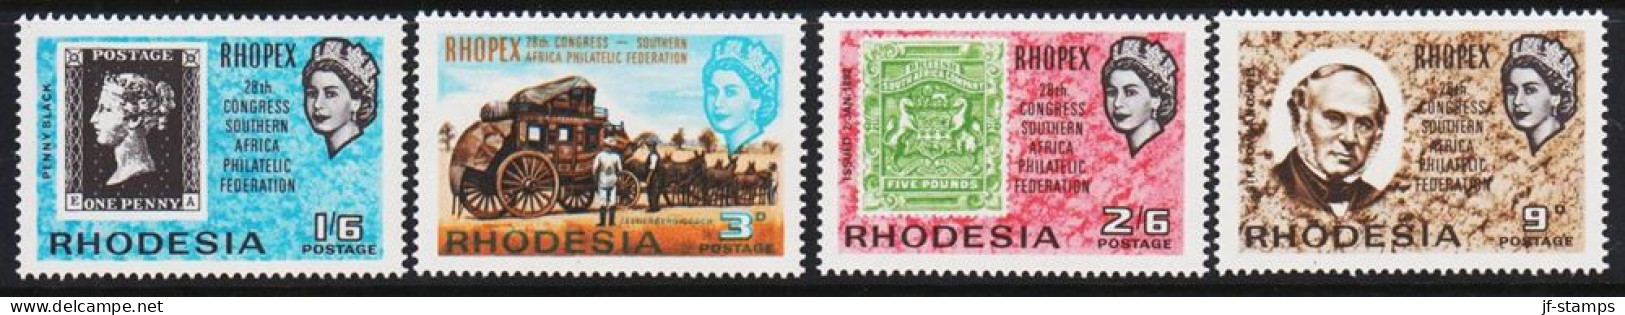 1966. RHODESIA. RHOPEX. Complete Set With 4 Stamps Never Hinged.  (Michel 38-41) - JF545281 - Rhodésie (1964-1980)